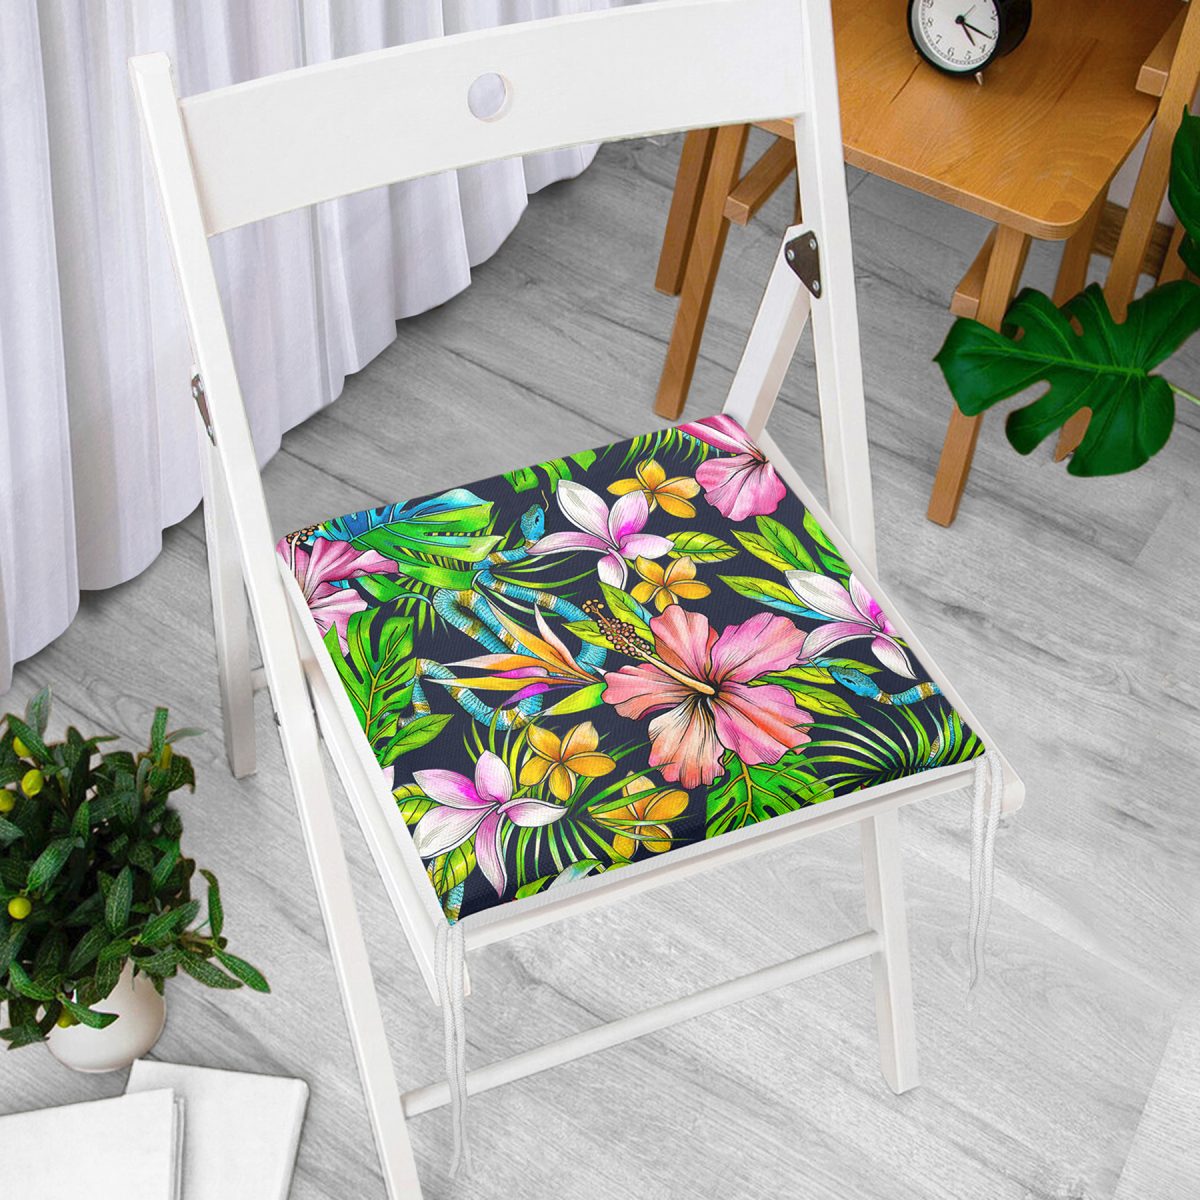 Lacivert Zeminli Tropikal Desenli Dijital Baskılı Fermuarlı Sandalye Minderi Realhomes